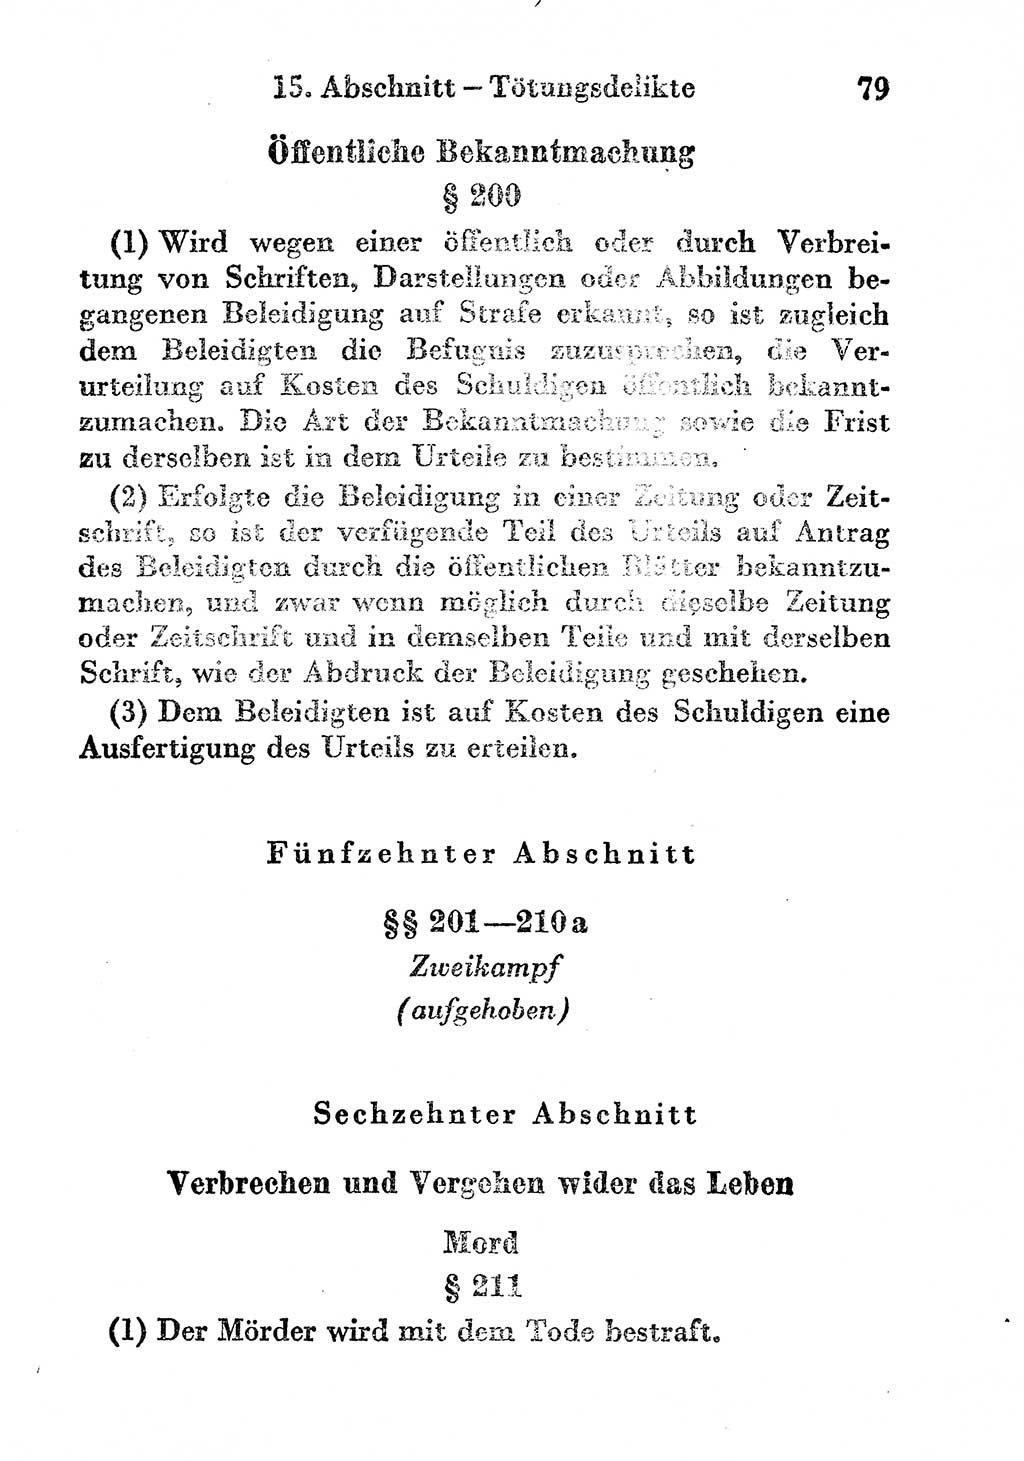 Strafgesetzbuch (StGB) und andere Strafgesetze [Deutsche Demokratische Republik (DDR)] 1956, Seite 79 (StGB Strafges. DDR 1956, S. 79)